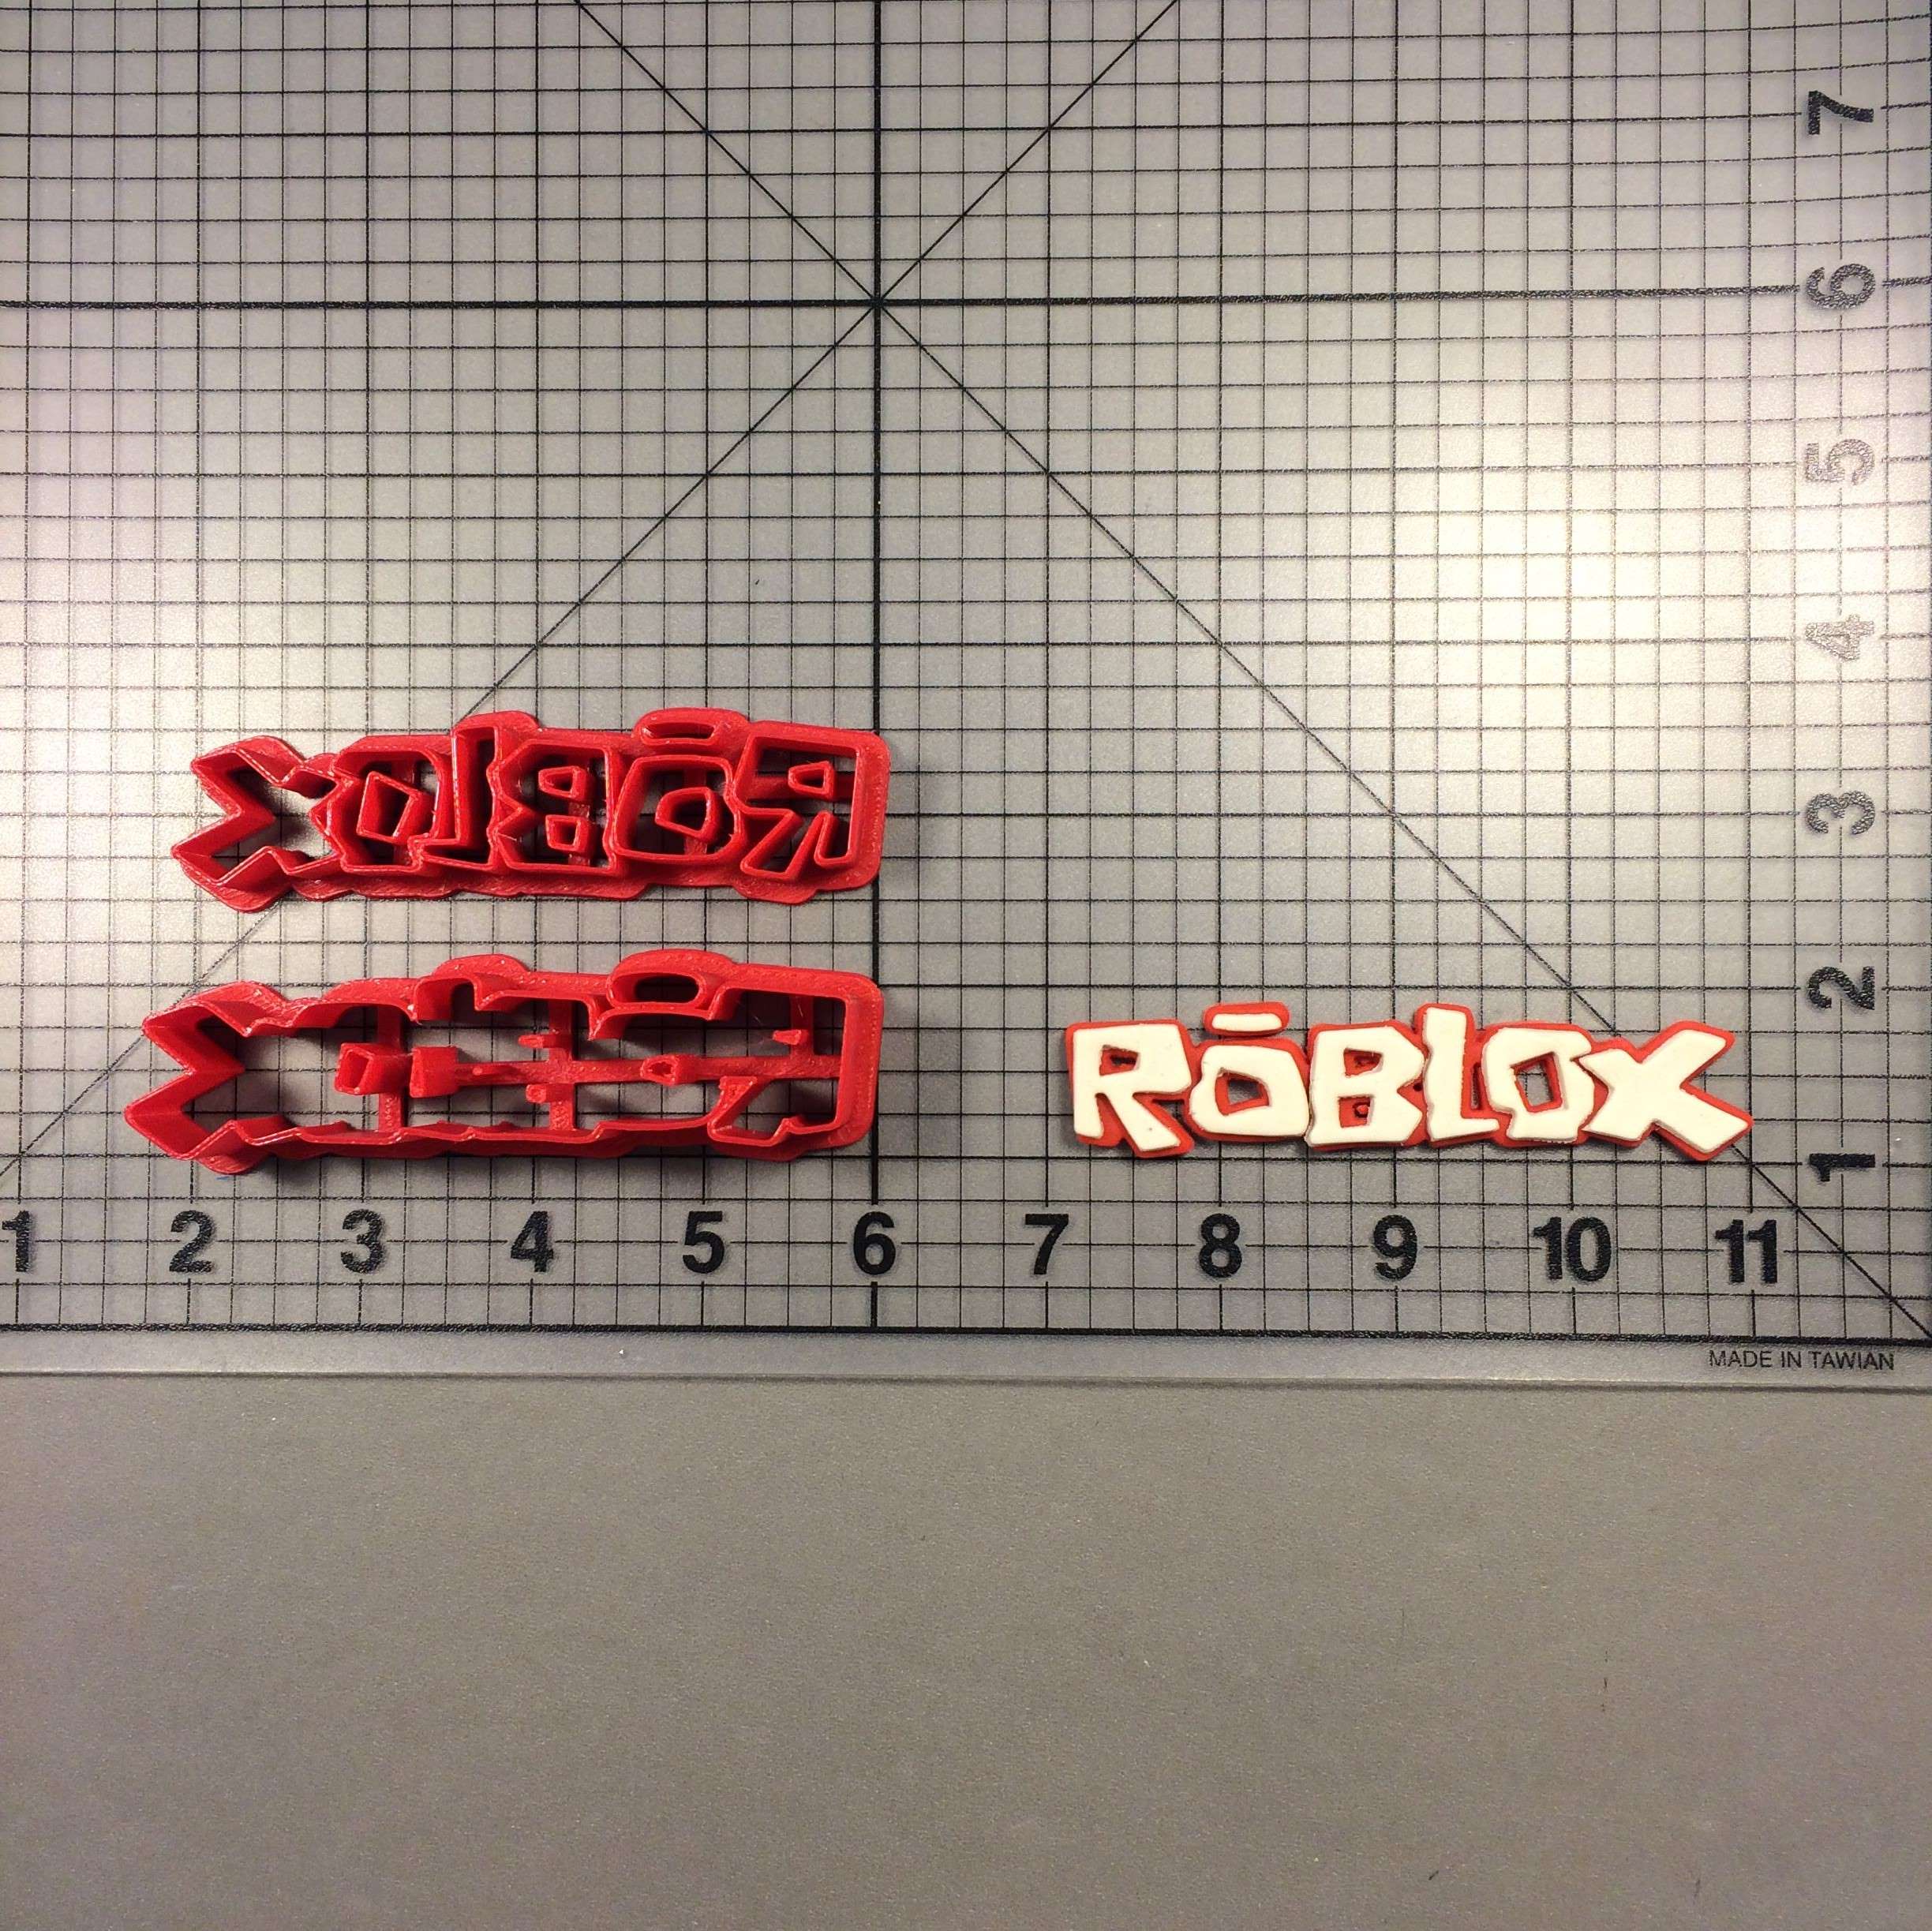 robloxs logo